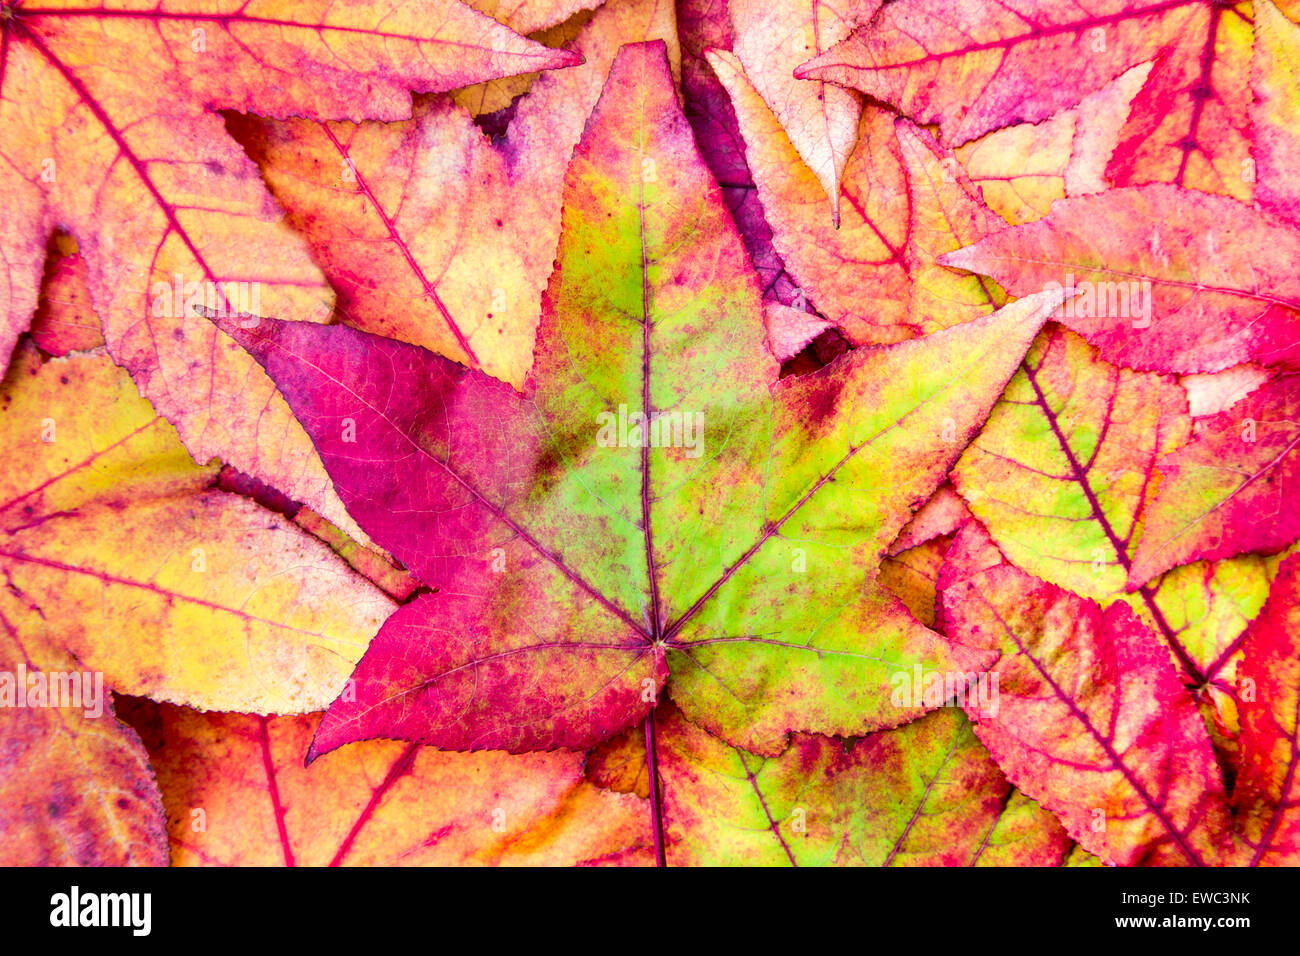 Pila de hojas de arce en colores rojo, verde y amarillo, los colores de otoño Foto de stock